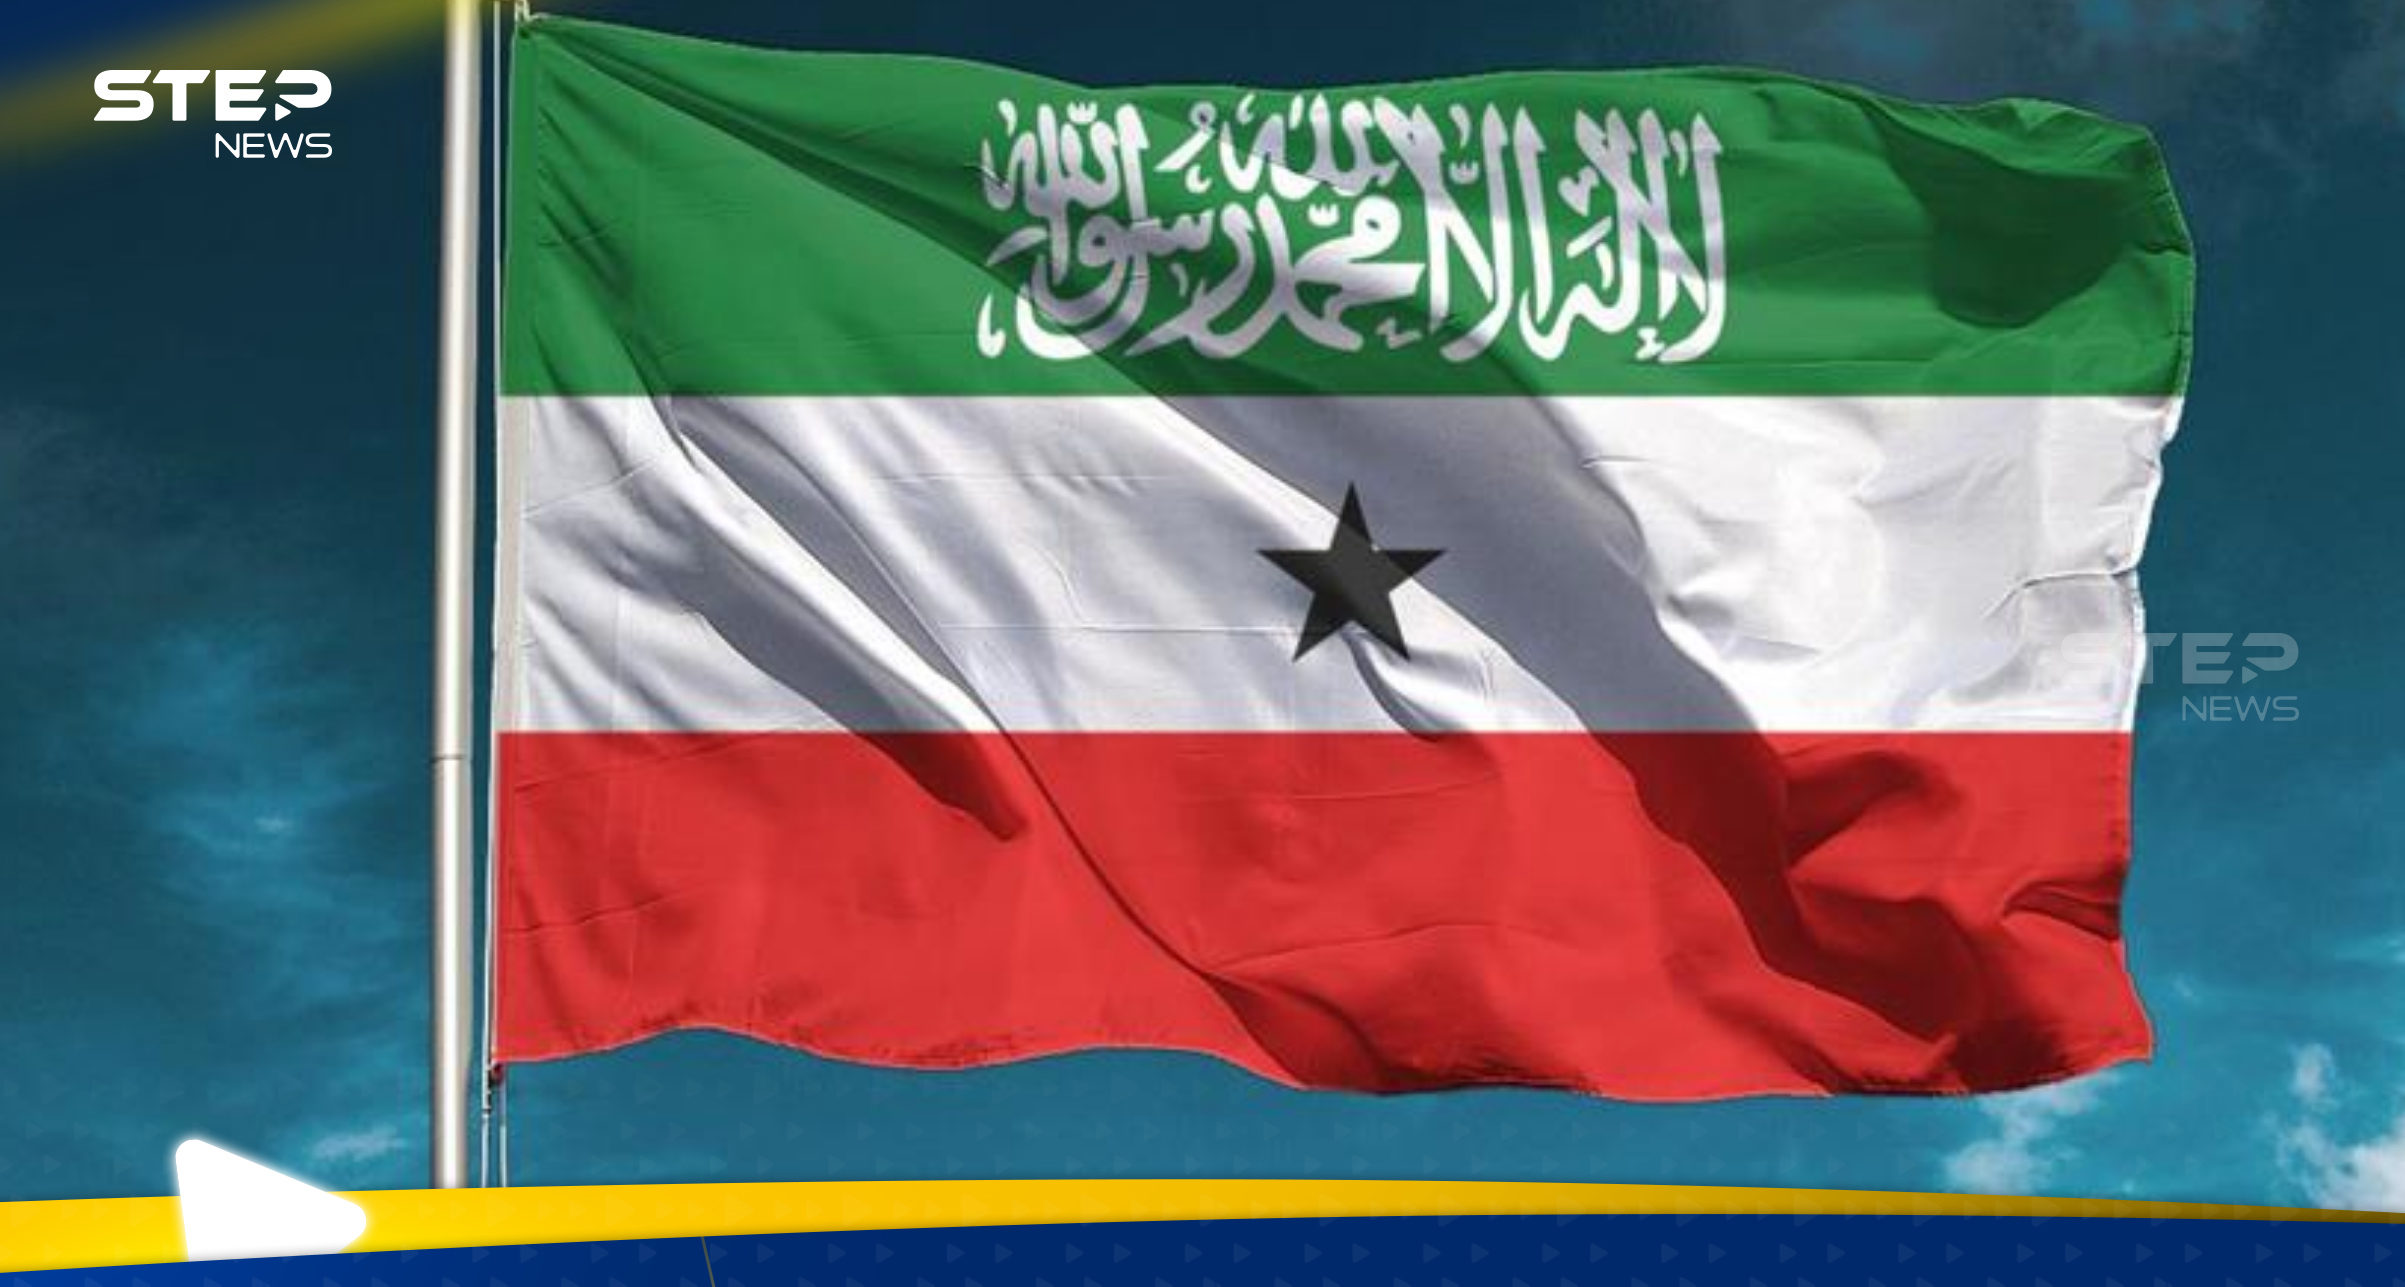 اجتماع طارئ في الجامعة العربية بشأن "أرض الصومال" ومسؤول يدعو لإجراءات عاجلة